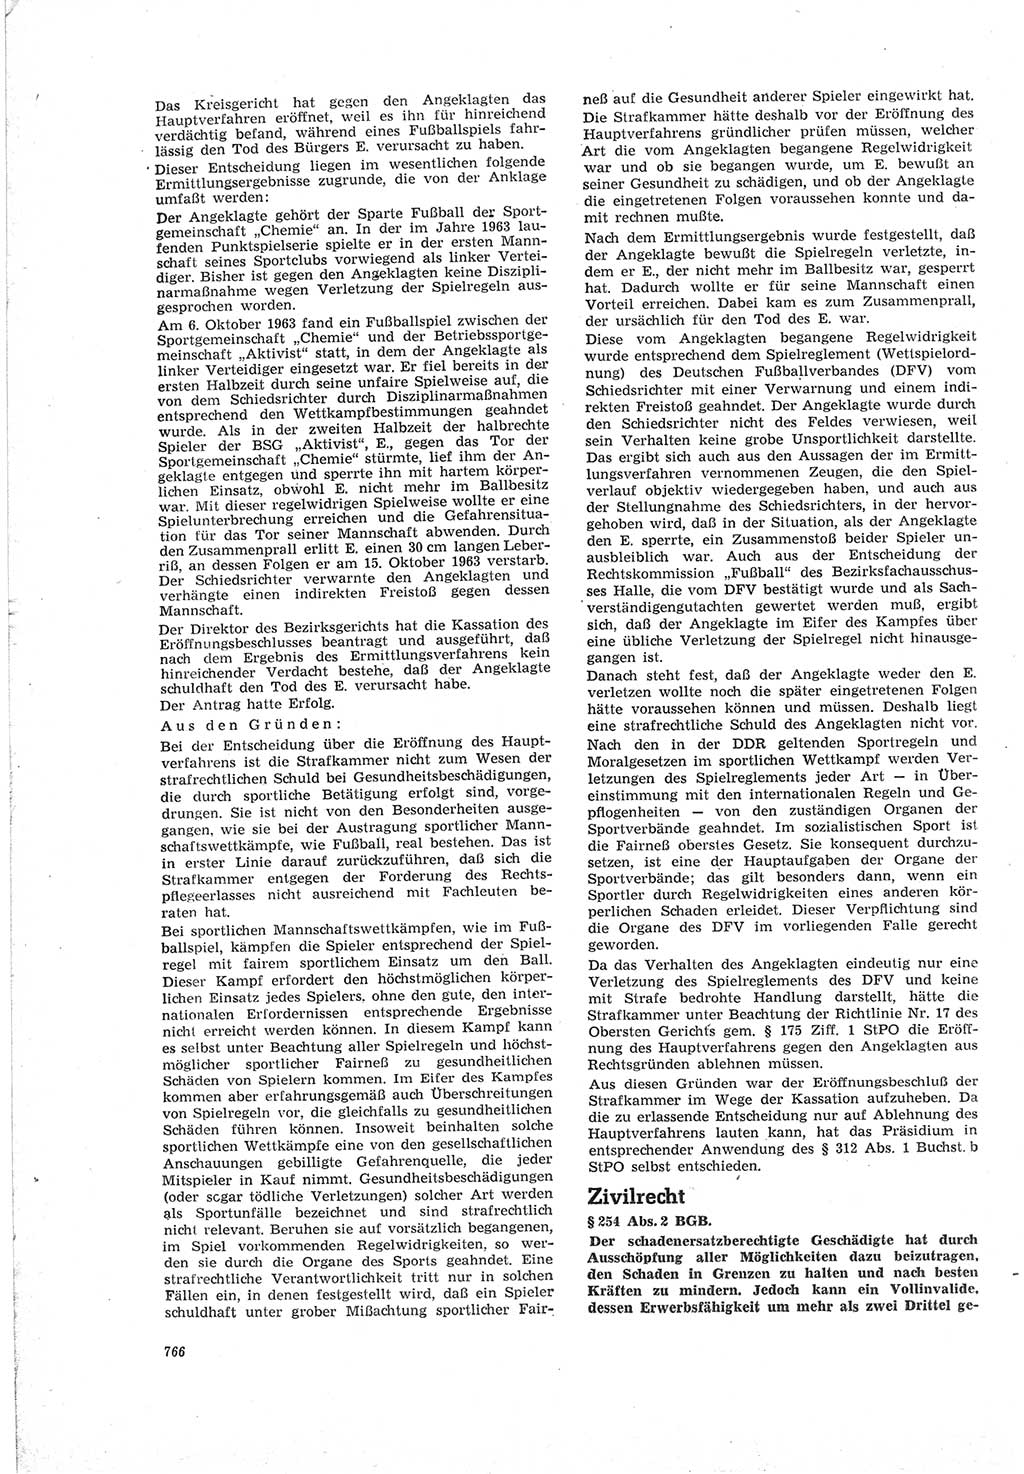 Neue Justiz (NJ), Zeitschrift für Recht und Rechtswissenschaft [Deutsche Demokratische Republik (DDR)], 18. Jahrgang 1964, Seite 766 (NJ DDR 1964, S. 766)